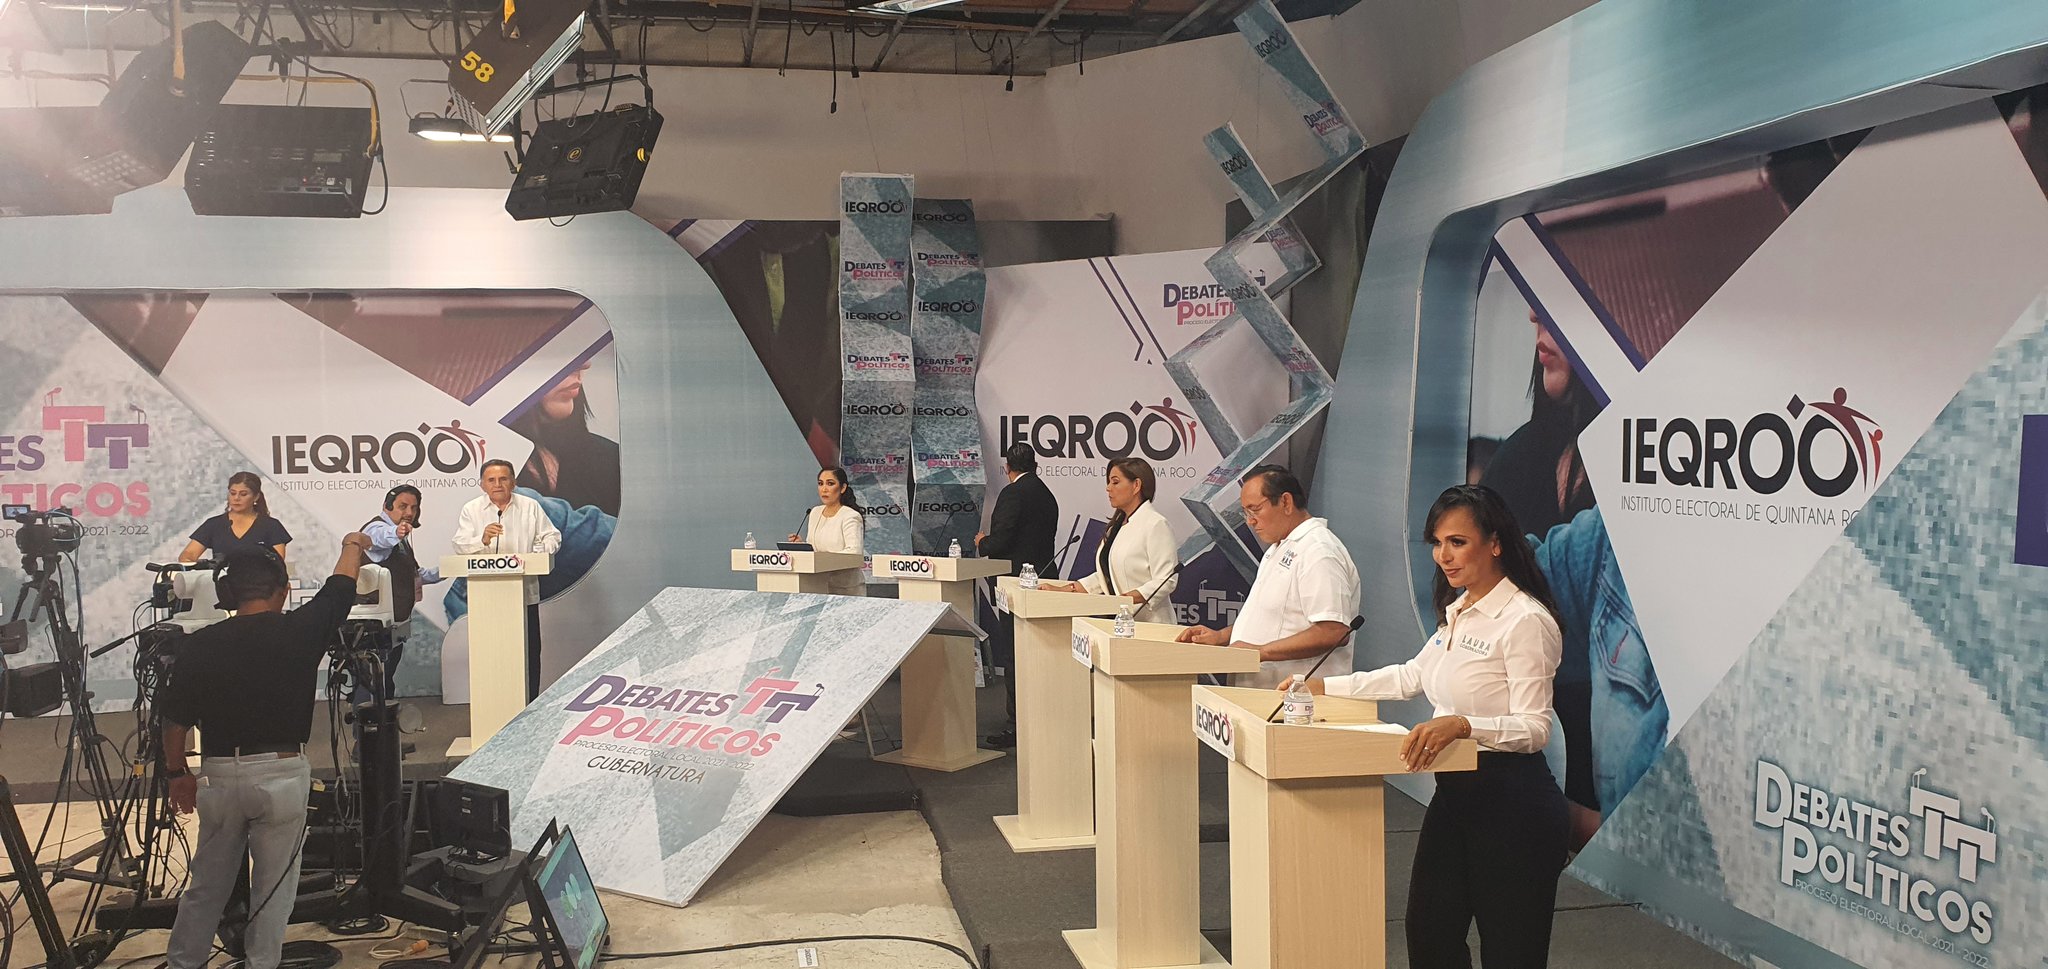 La noche del 21 de mayo se llevó a cabo el debate entre candidatos y candidatas a la gubernatura de Quintana Roo (Foto: Twitter/@MayraSanRomaCM)